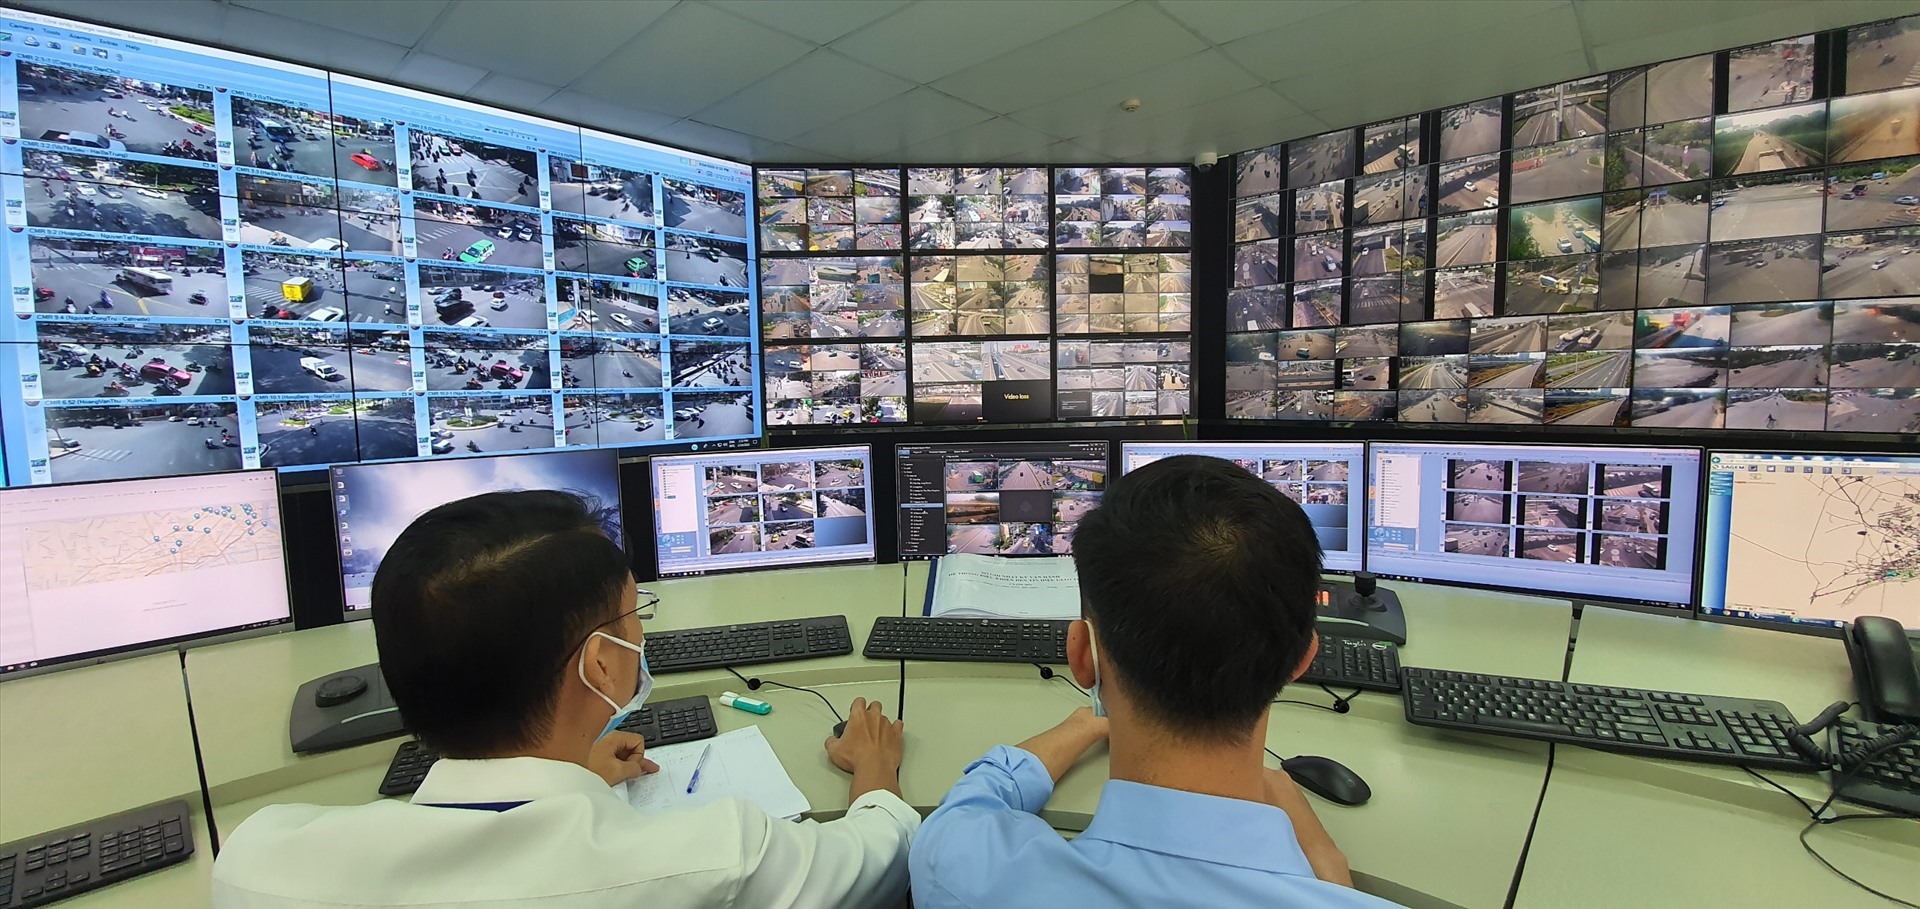 Ứng dụng “TTGT Tp Hồ Chí Minh” hiện được vận hành bởi Trung tâm quản lý đường hầm sông Sài Gòn.